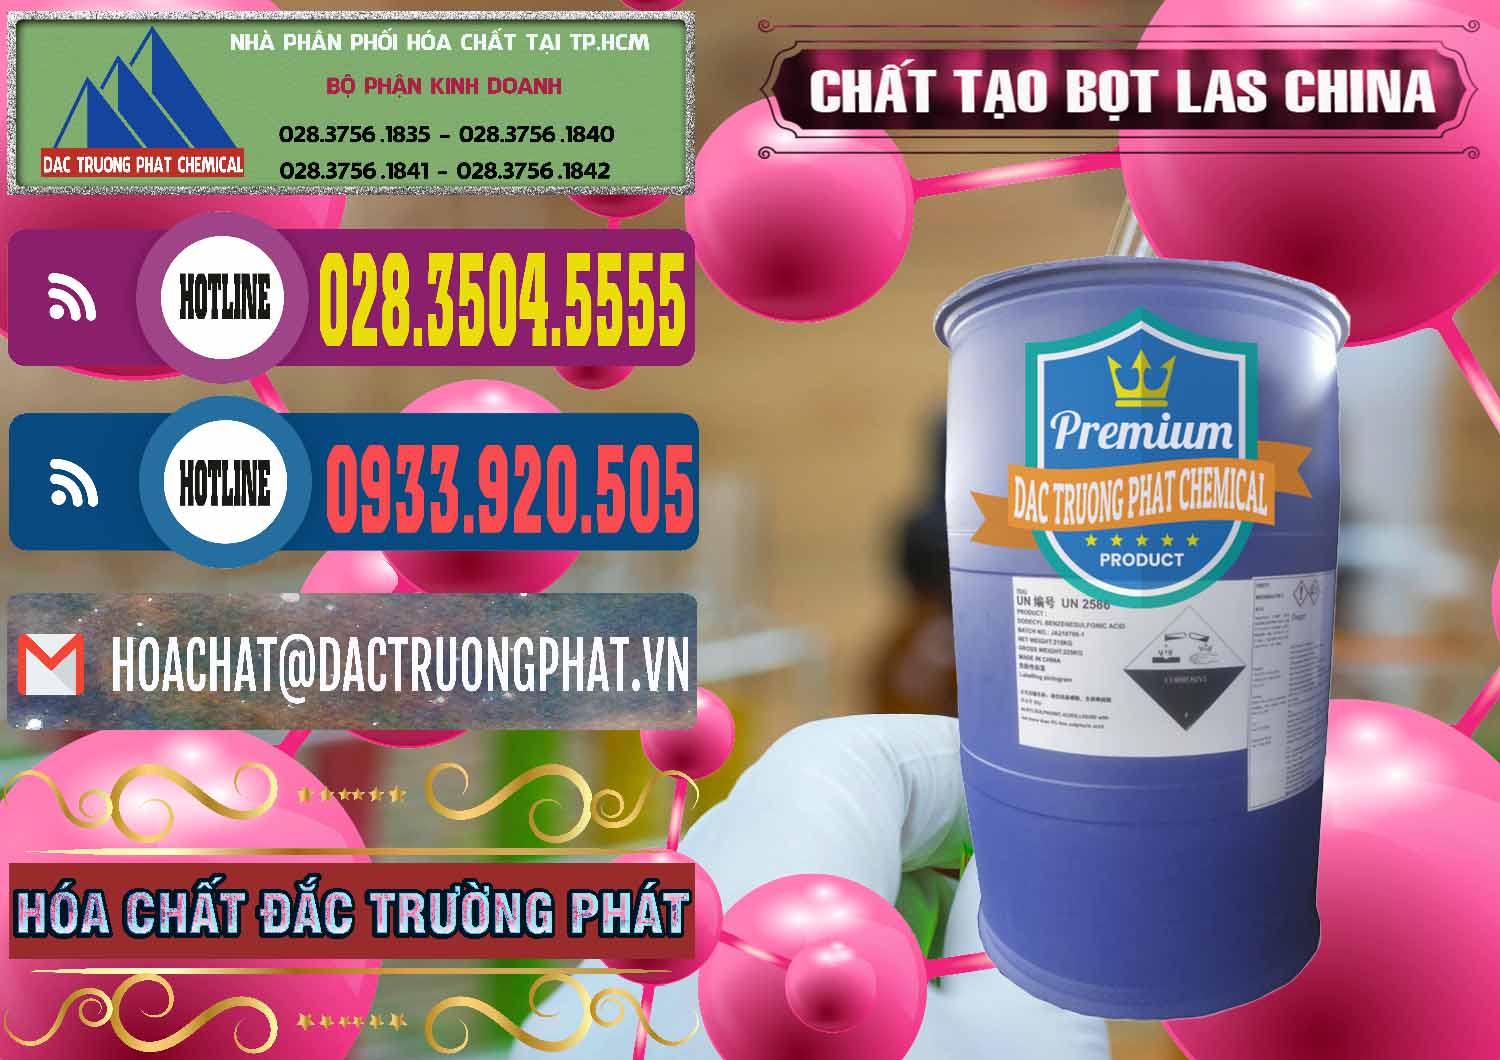 Nơi chuyên bán và phân phối Chất tạo bọt Las Trung Quốc China - 0451 - Nhà cung cấp _ kinh doanh hóa chất tại TP.HCM - muabanhoachat.com.vn